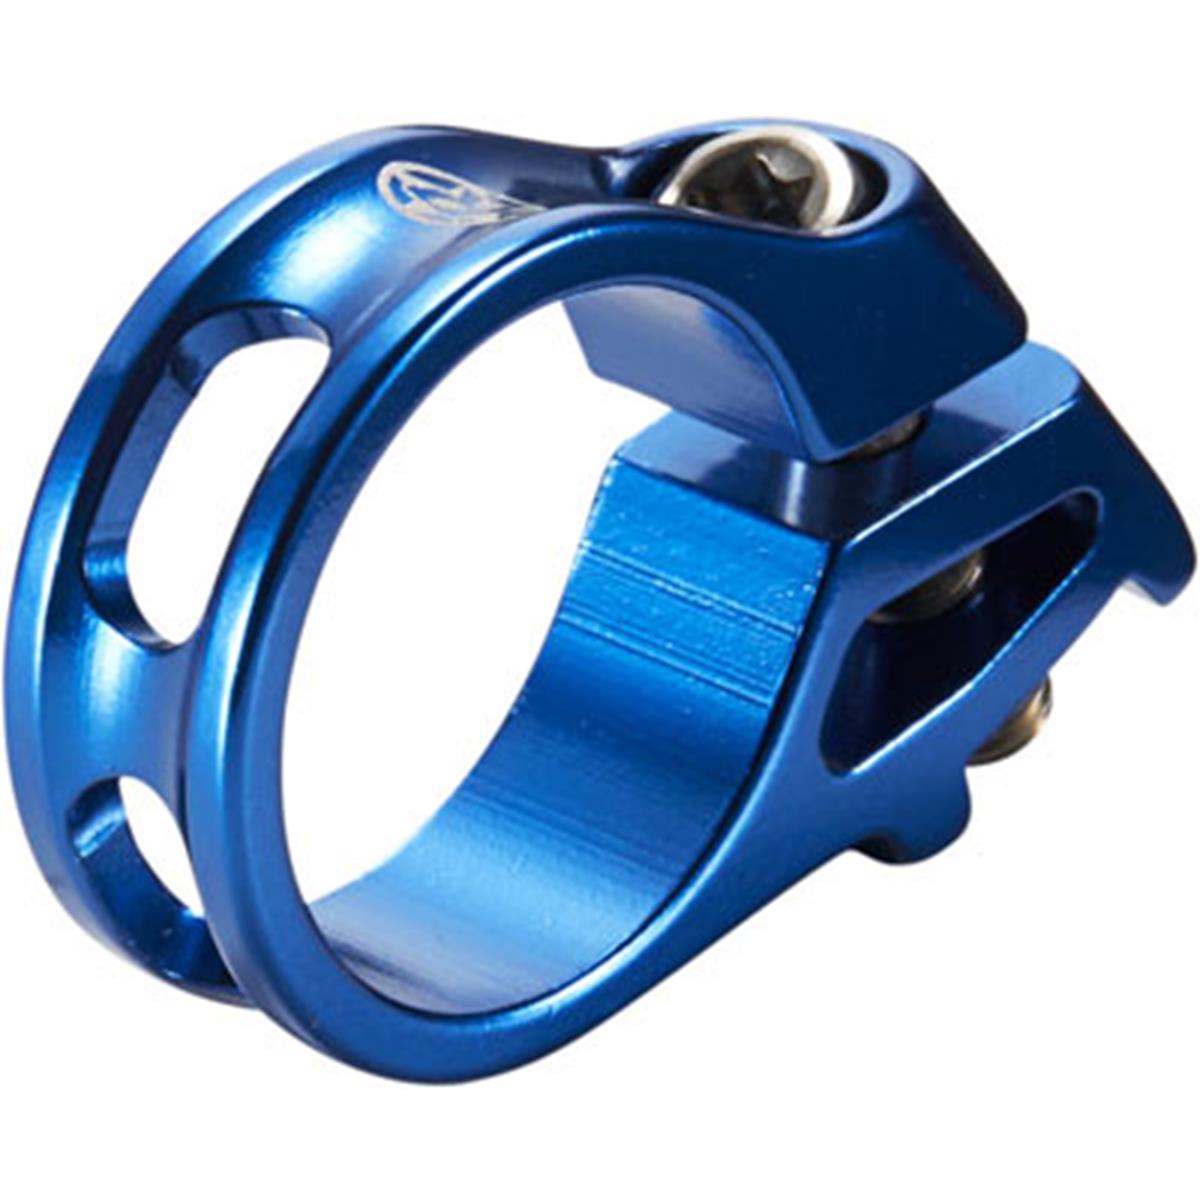 Reverse Components Fascetta Trigger Blu, per leva del cambio SRAM Trigger